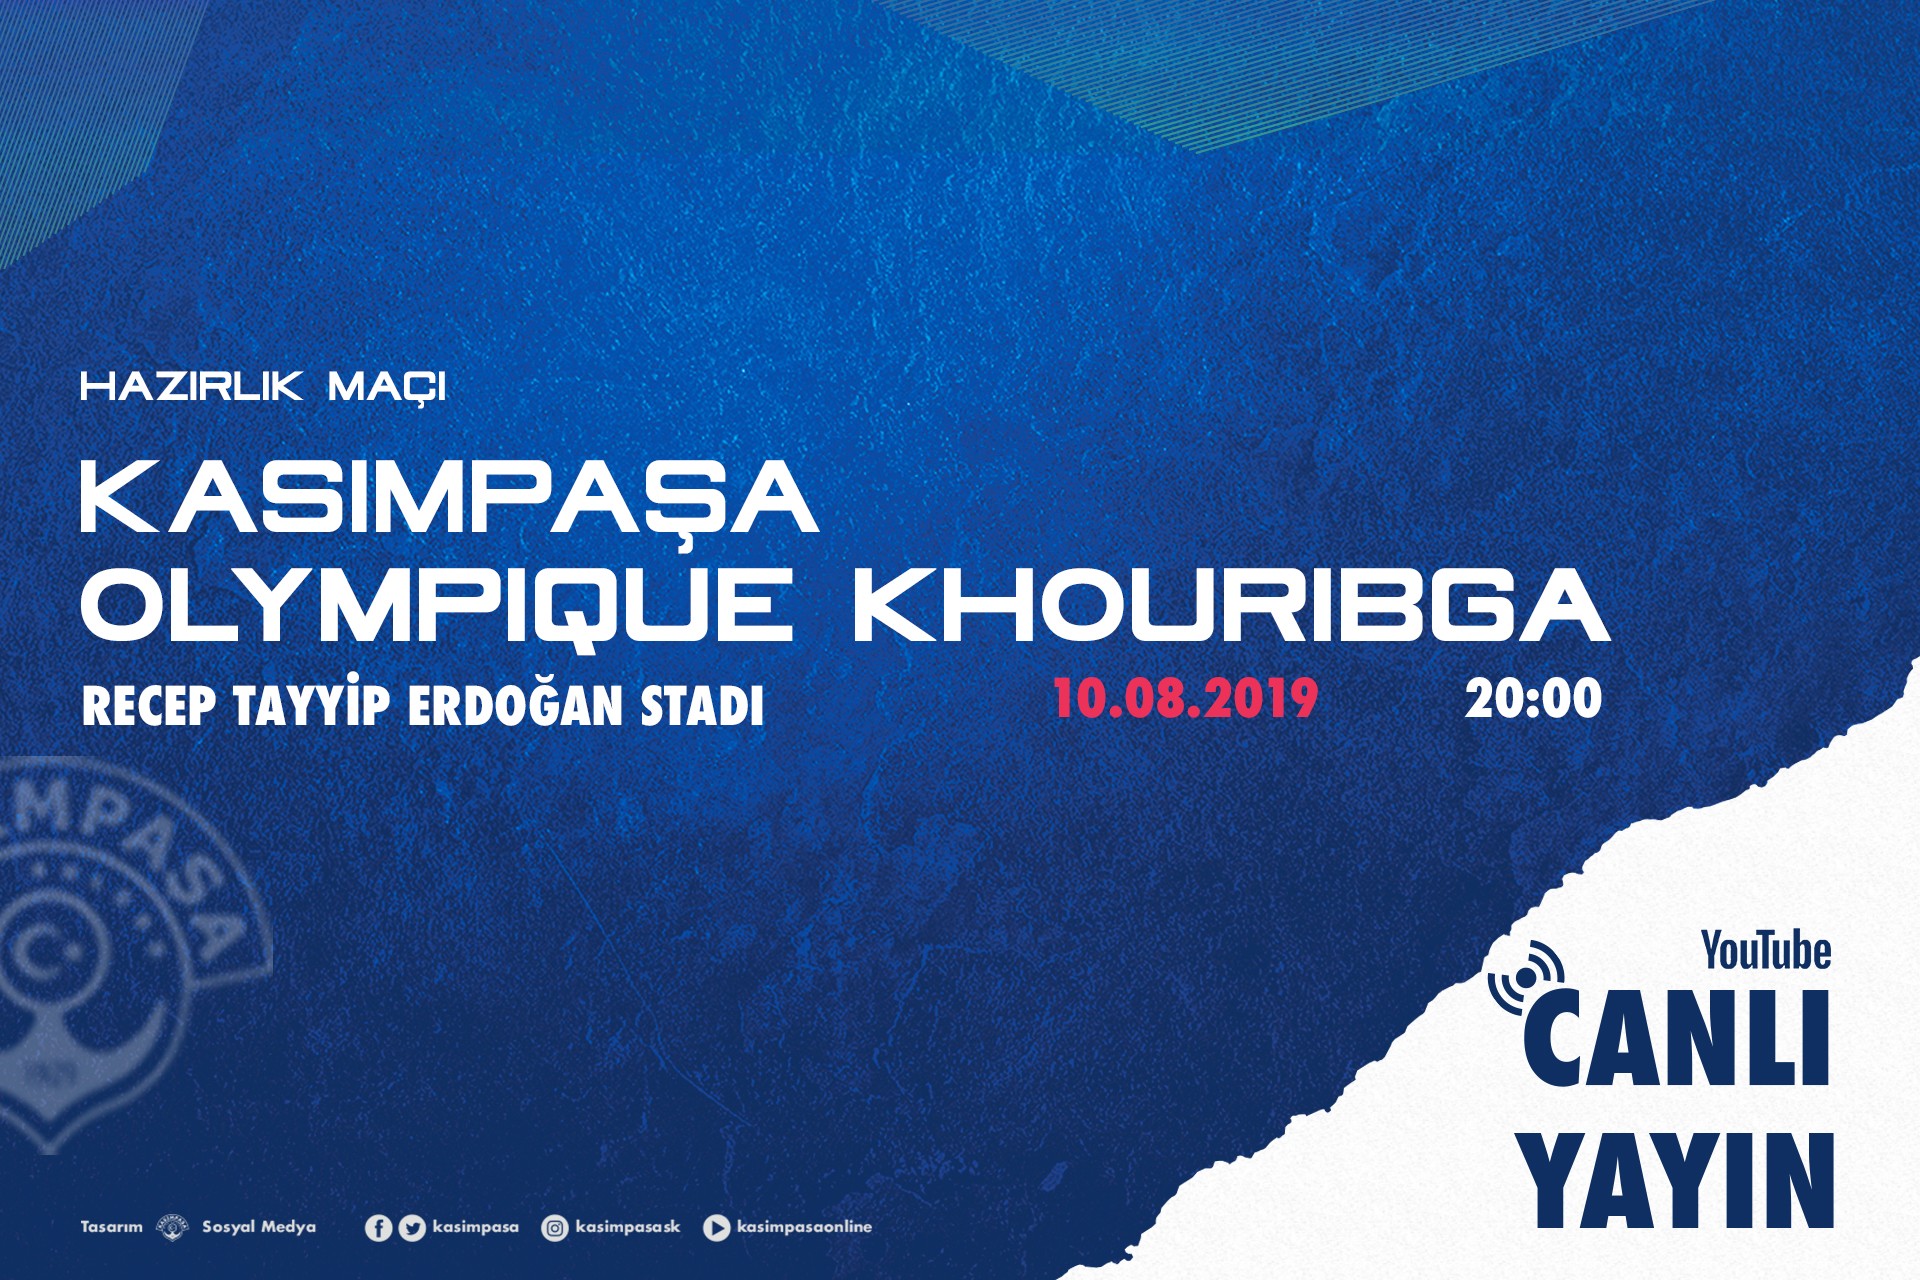 Olympique Khouribga ile hazırlık maçı